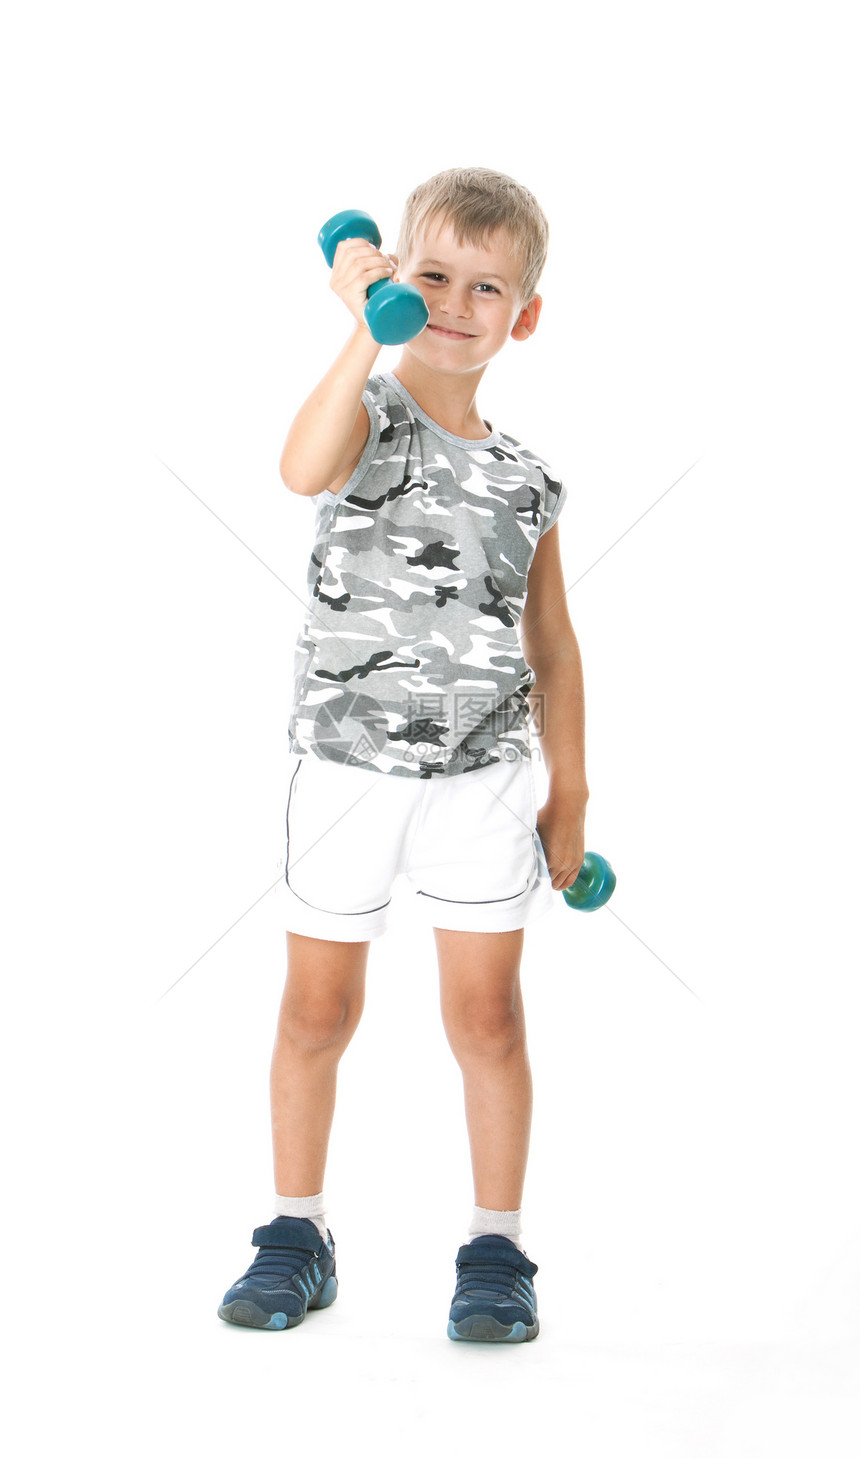 有哑铃的男孩玩具男性健康青年童年运动休闲孩子竞赛乐趣图片